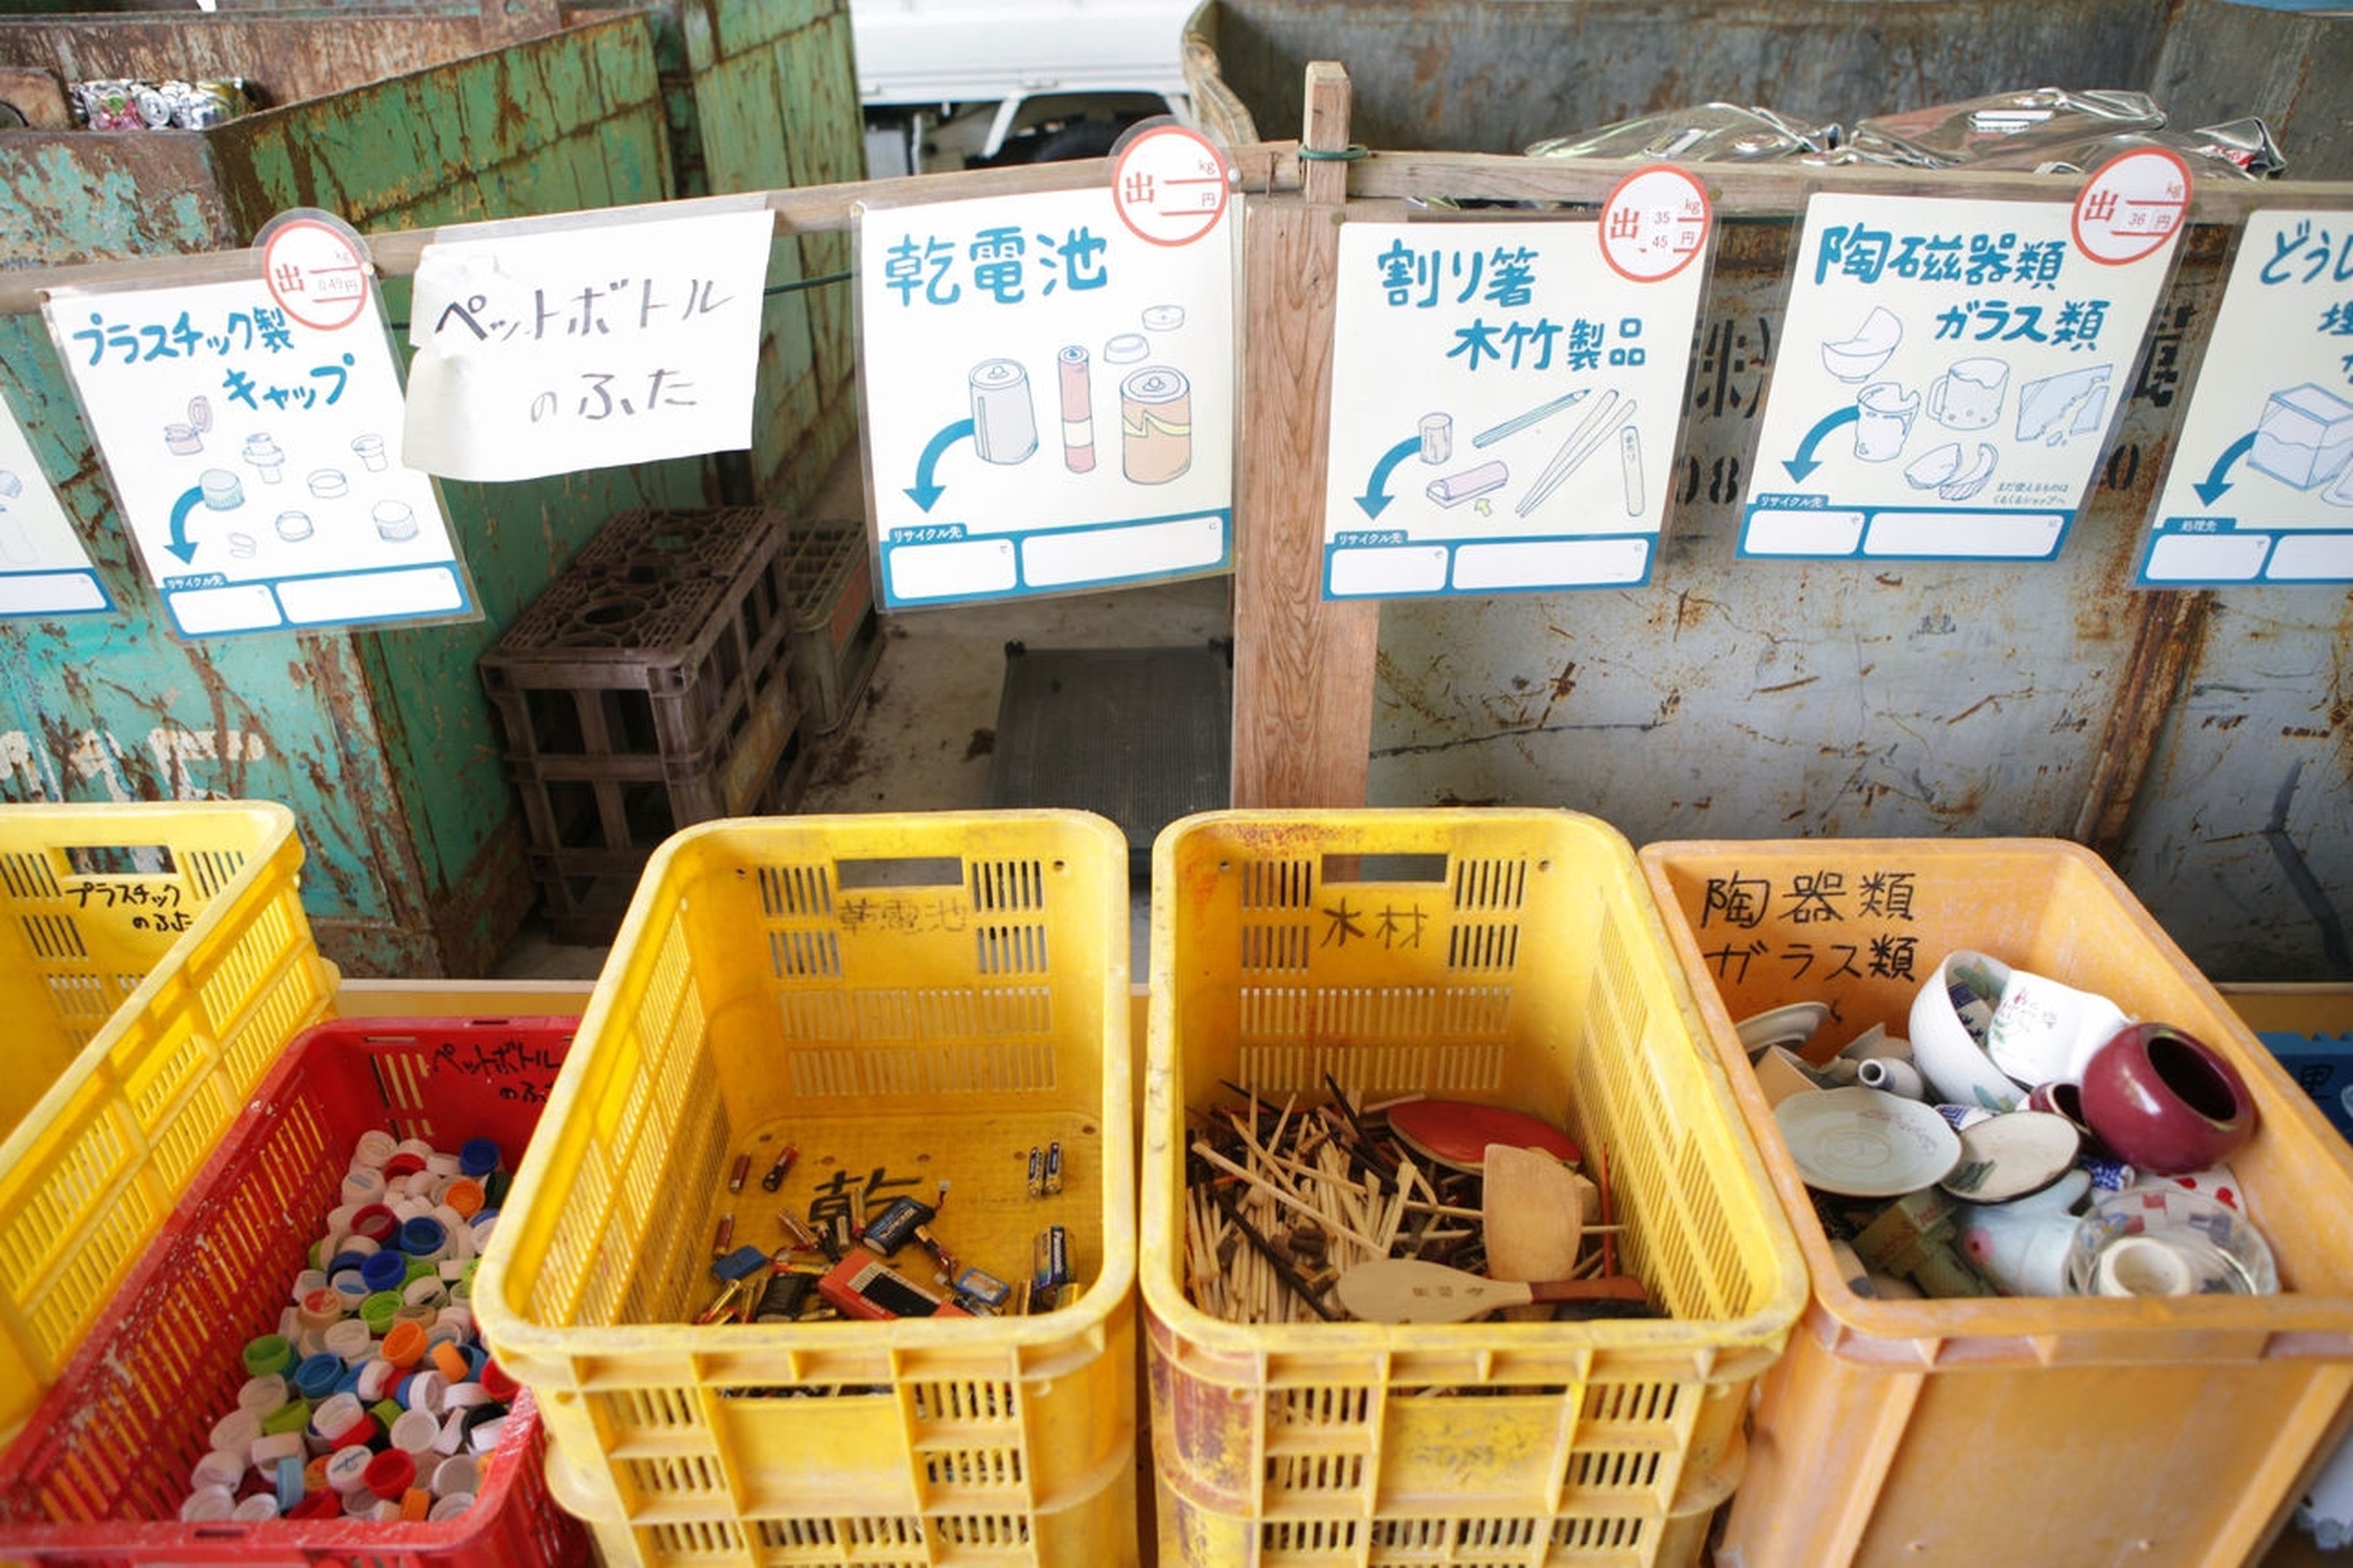 ¿Te cuesta reciclar? La odisea de reciclar en Japón